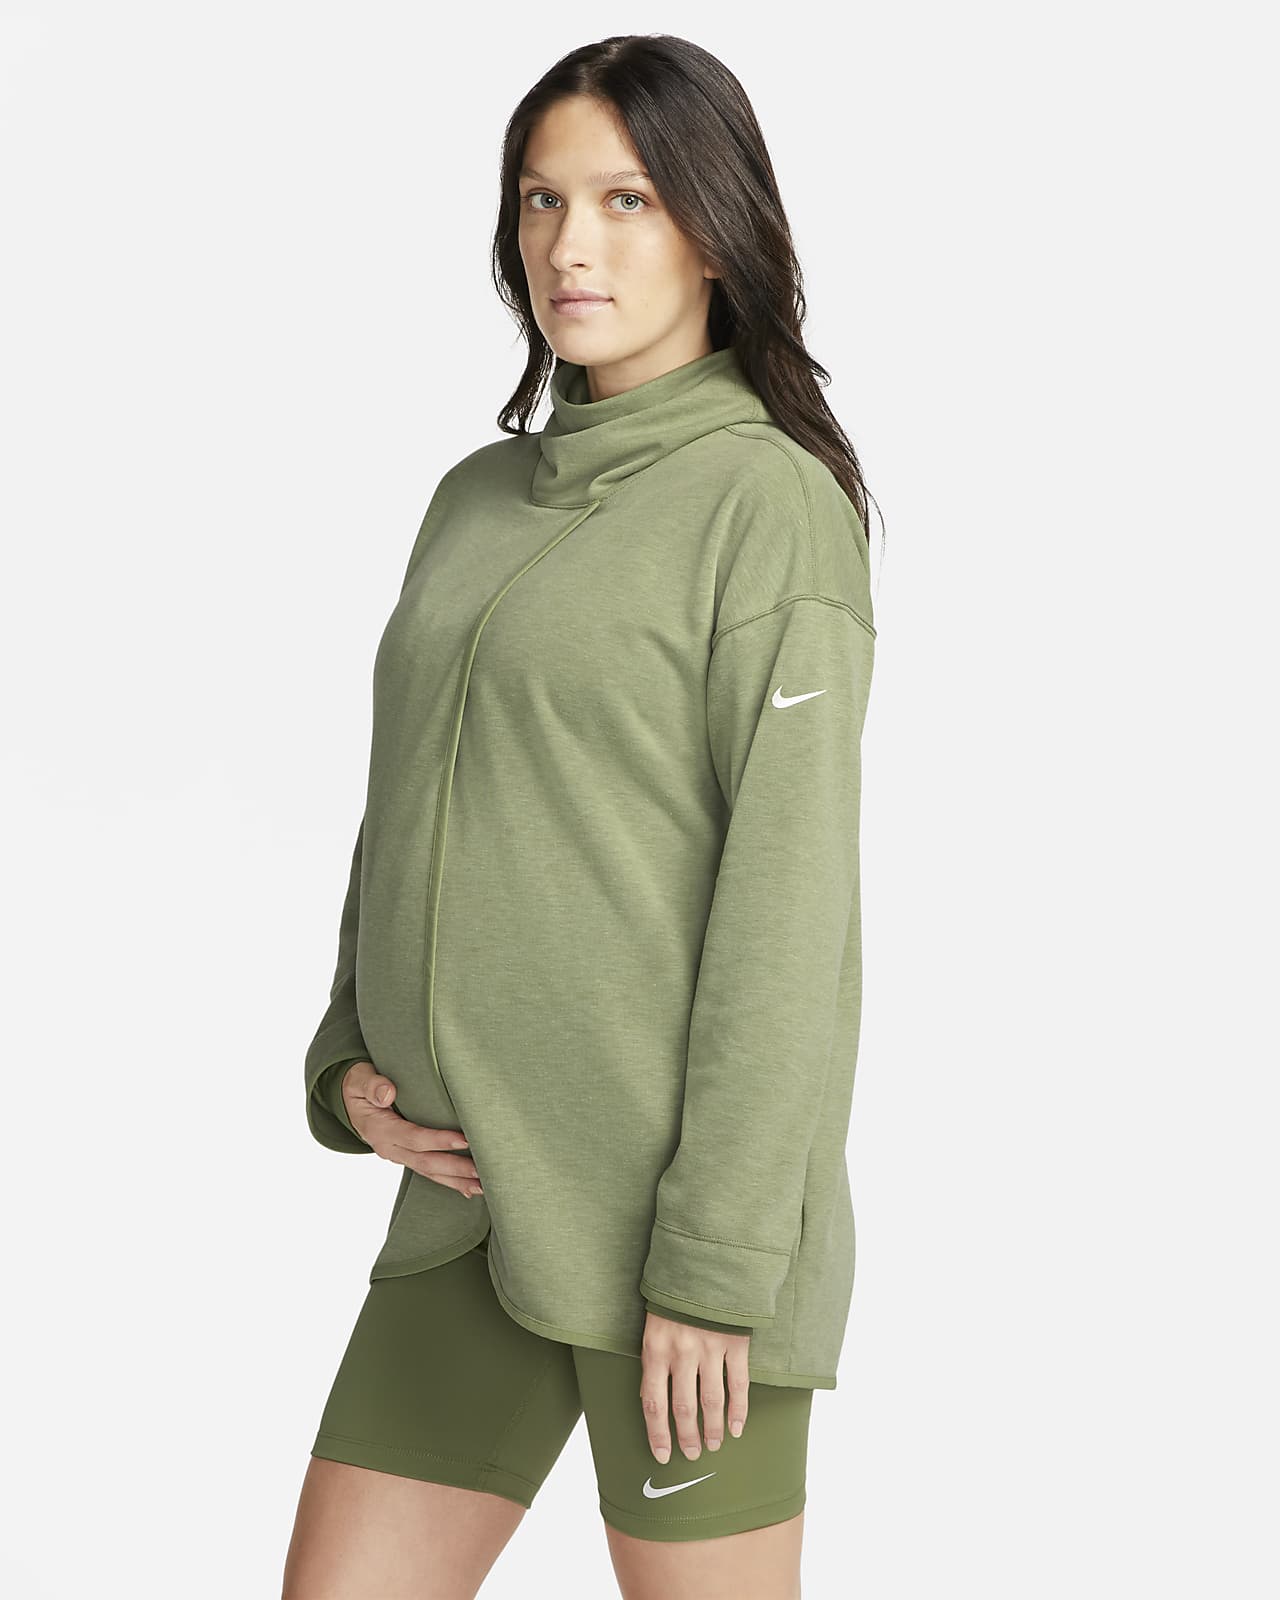 Ewell officieel moeilijk tevreden te krijgen Nike (M) Damestrui (zwangerschapskleding). Nike BE